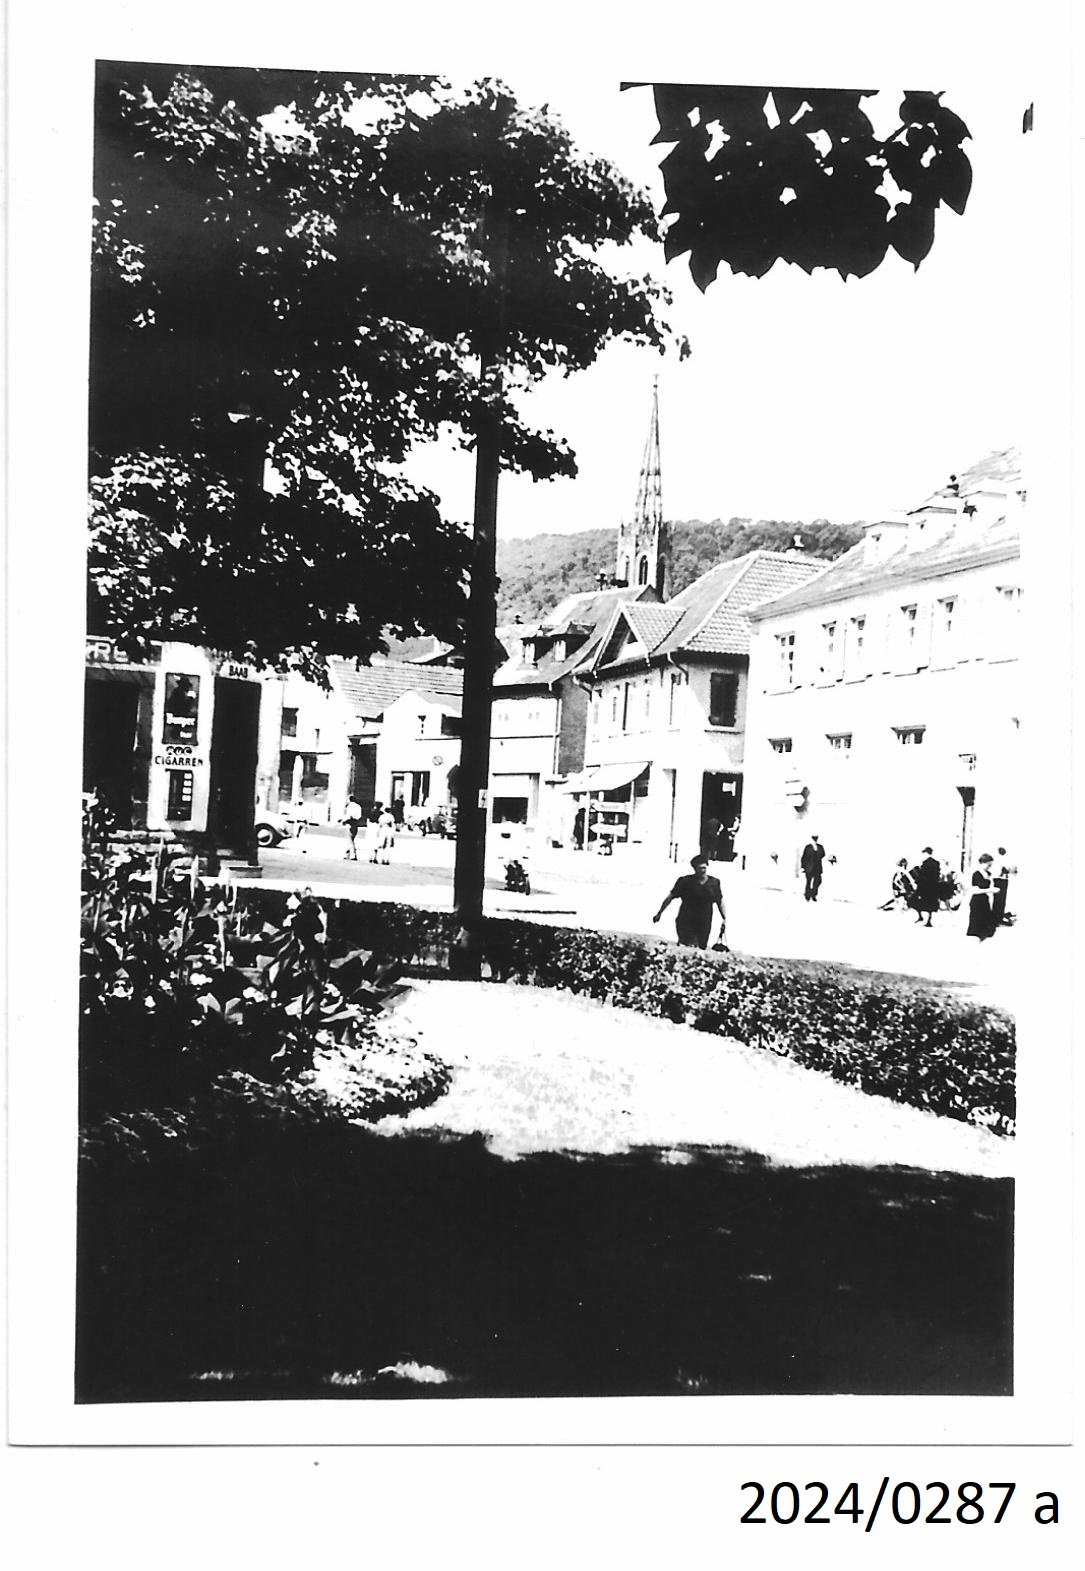 Bad Dürkheim, Blick vom Bahnhofsvorplatz auf die Ecke Mannheimer Straße/Bahnhofsstraße, 1950er Jahre (Stadtmuseum Bad Dürkheim im Kulturzentrum Haus Catoir CC BY-NC-SA)